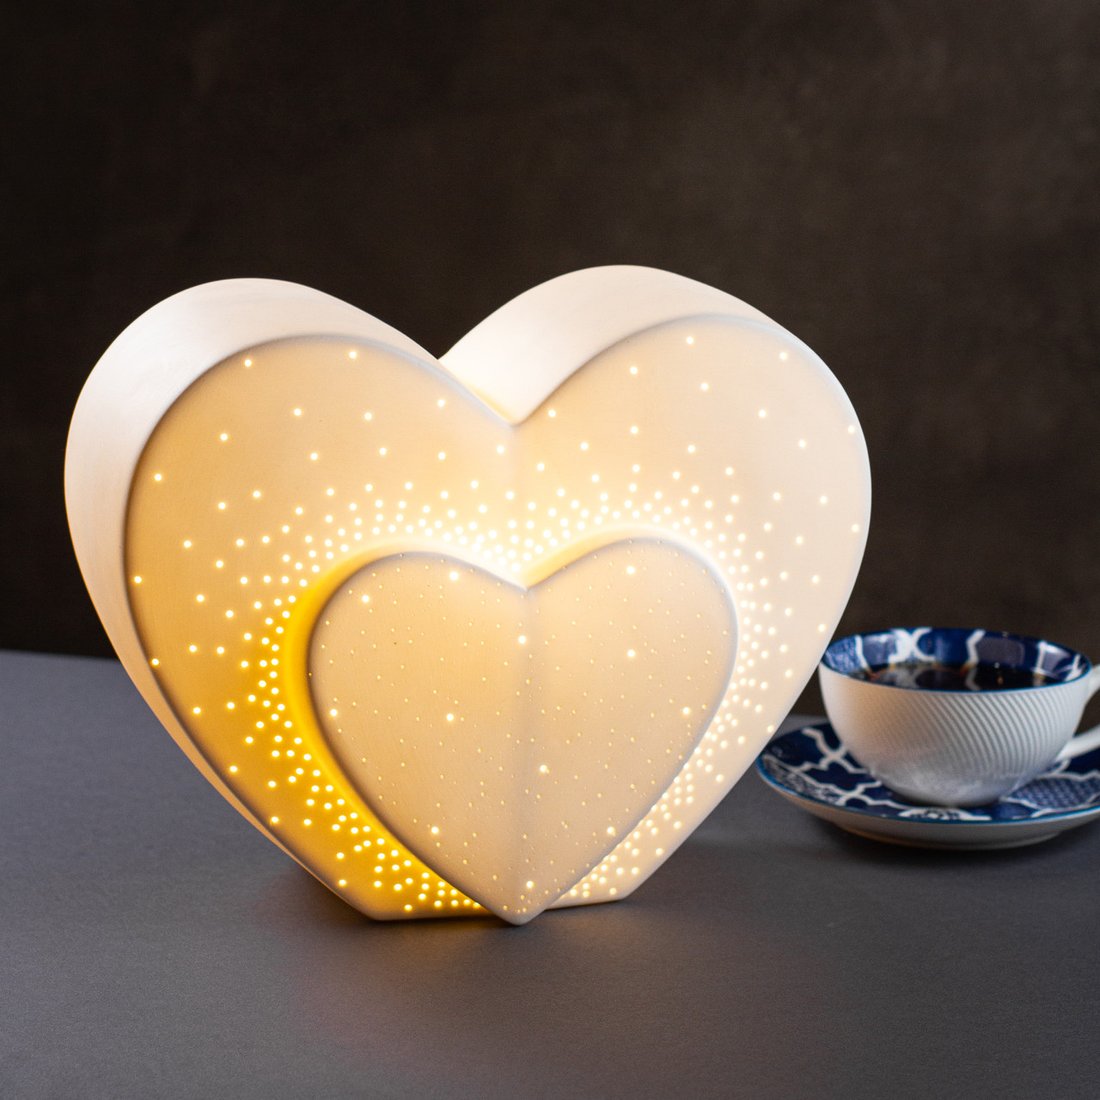 Настільна порцелянова лампа-нічник "Серце", ручна робота, з регулюванням кольору освітлення 16 кольорів!